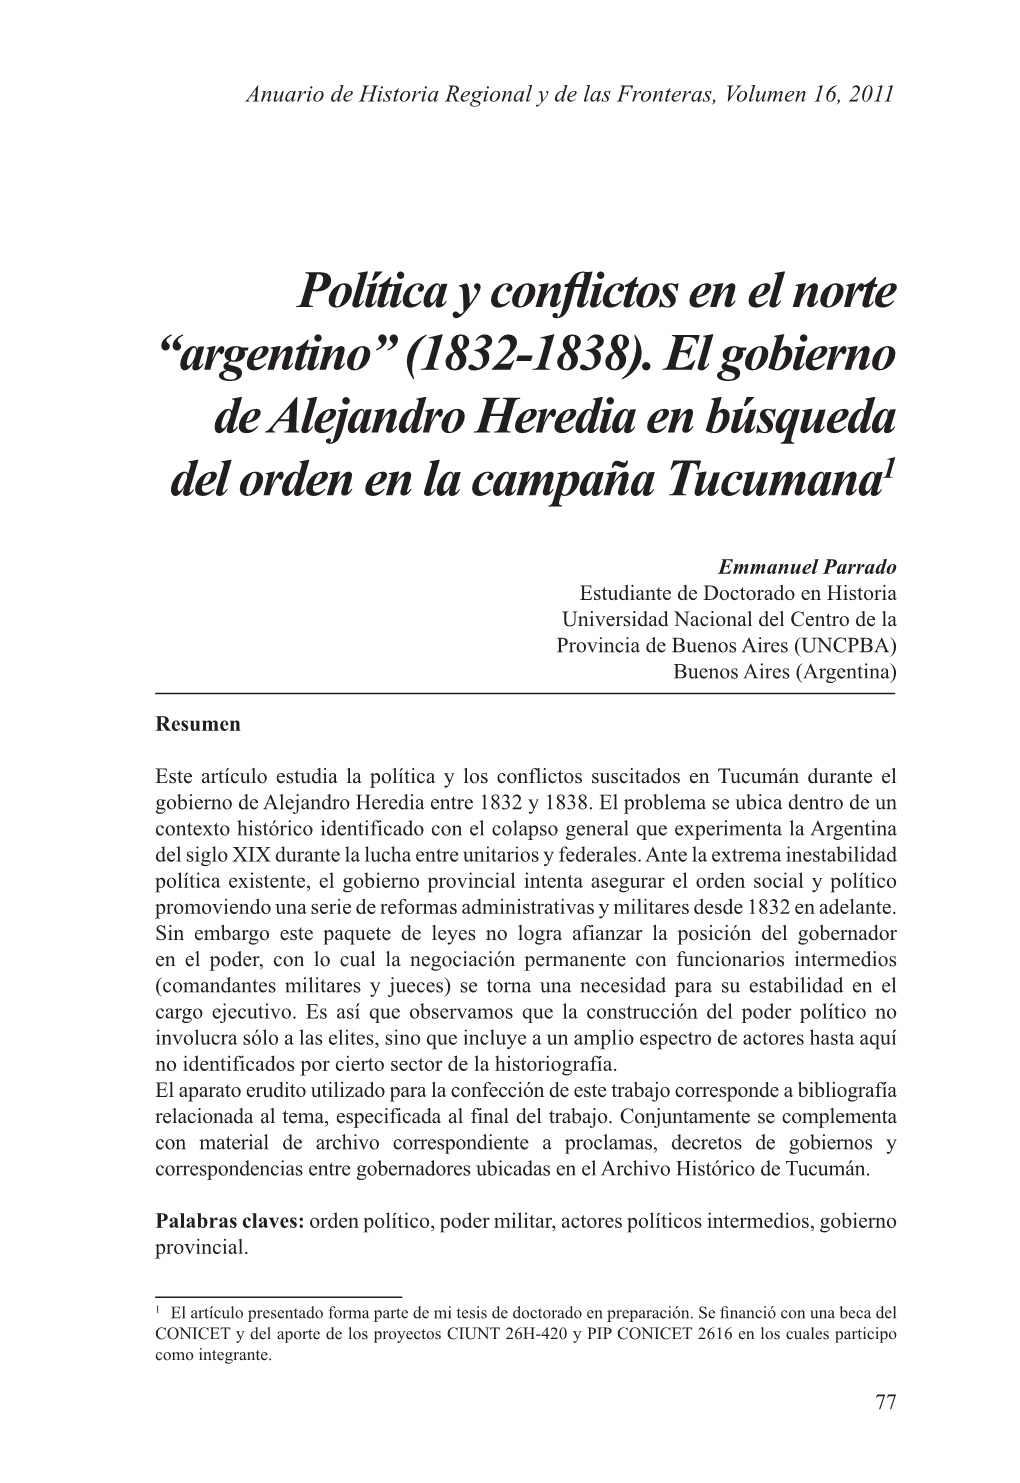 Política Y Conflictos En El Norte “Argentino” (1832-1838). El Gobierno De Alejandro Heredia En Búsqueda Del Orden En La Campaña Tucumana1